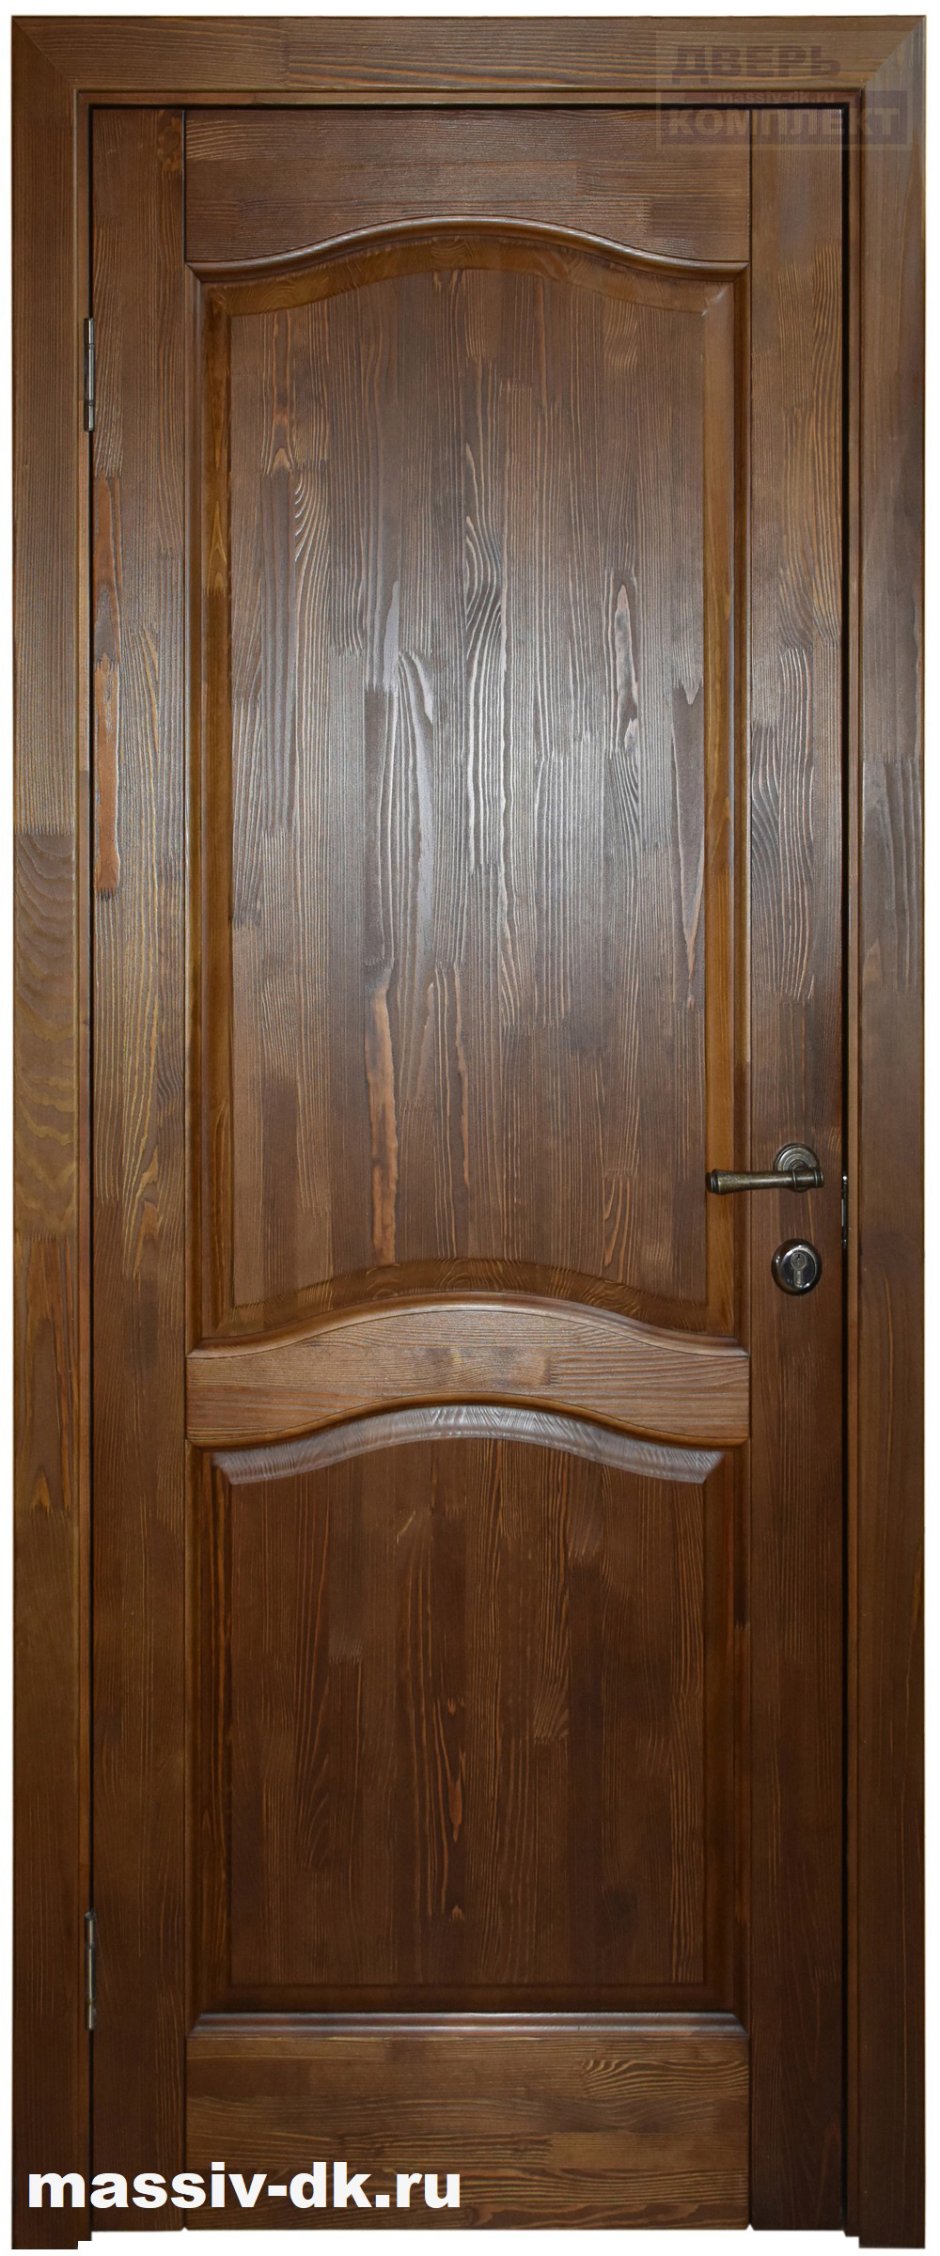 Двери лео античный орех (31 фото)